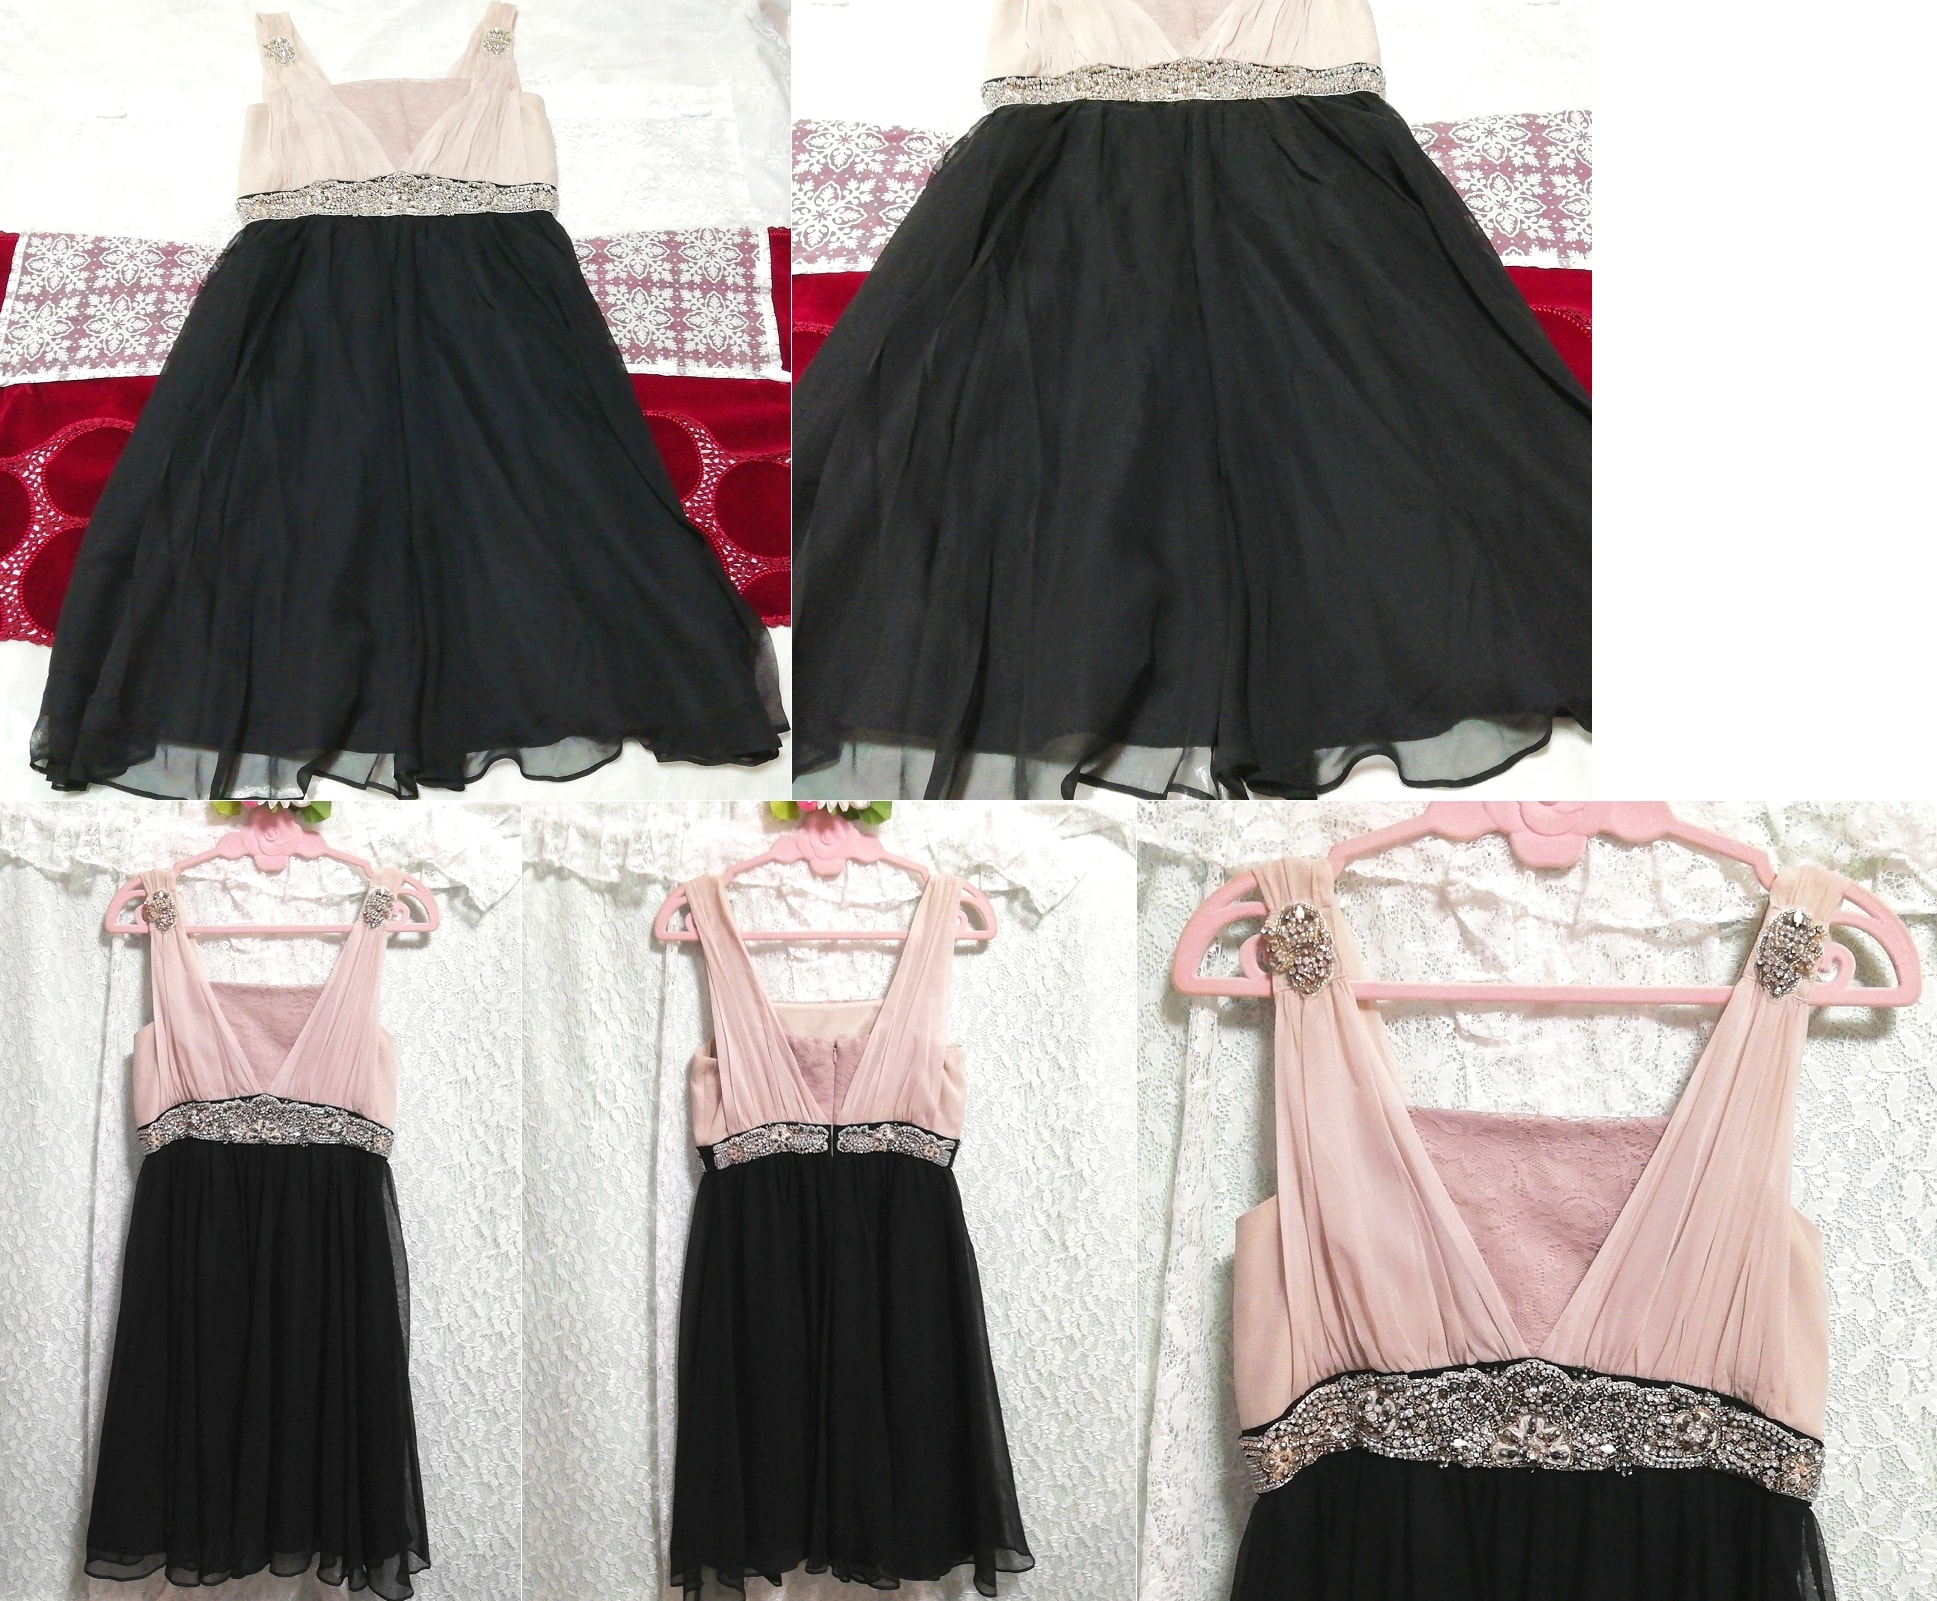 Rosa Chiffon-Schmuck, schwarzer Rock, luxuriöses Negligé-Nachthemd aus Seide, Mode, Frauenmode, Nachtwäsche, Pyjama